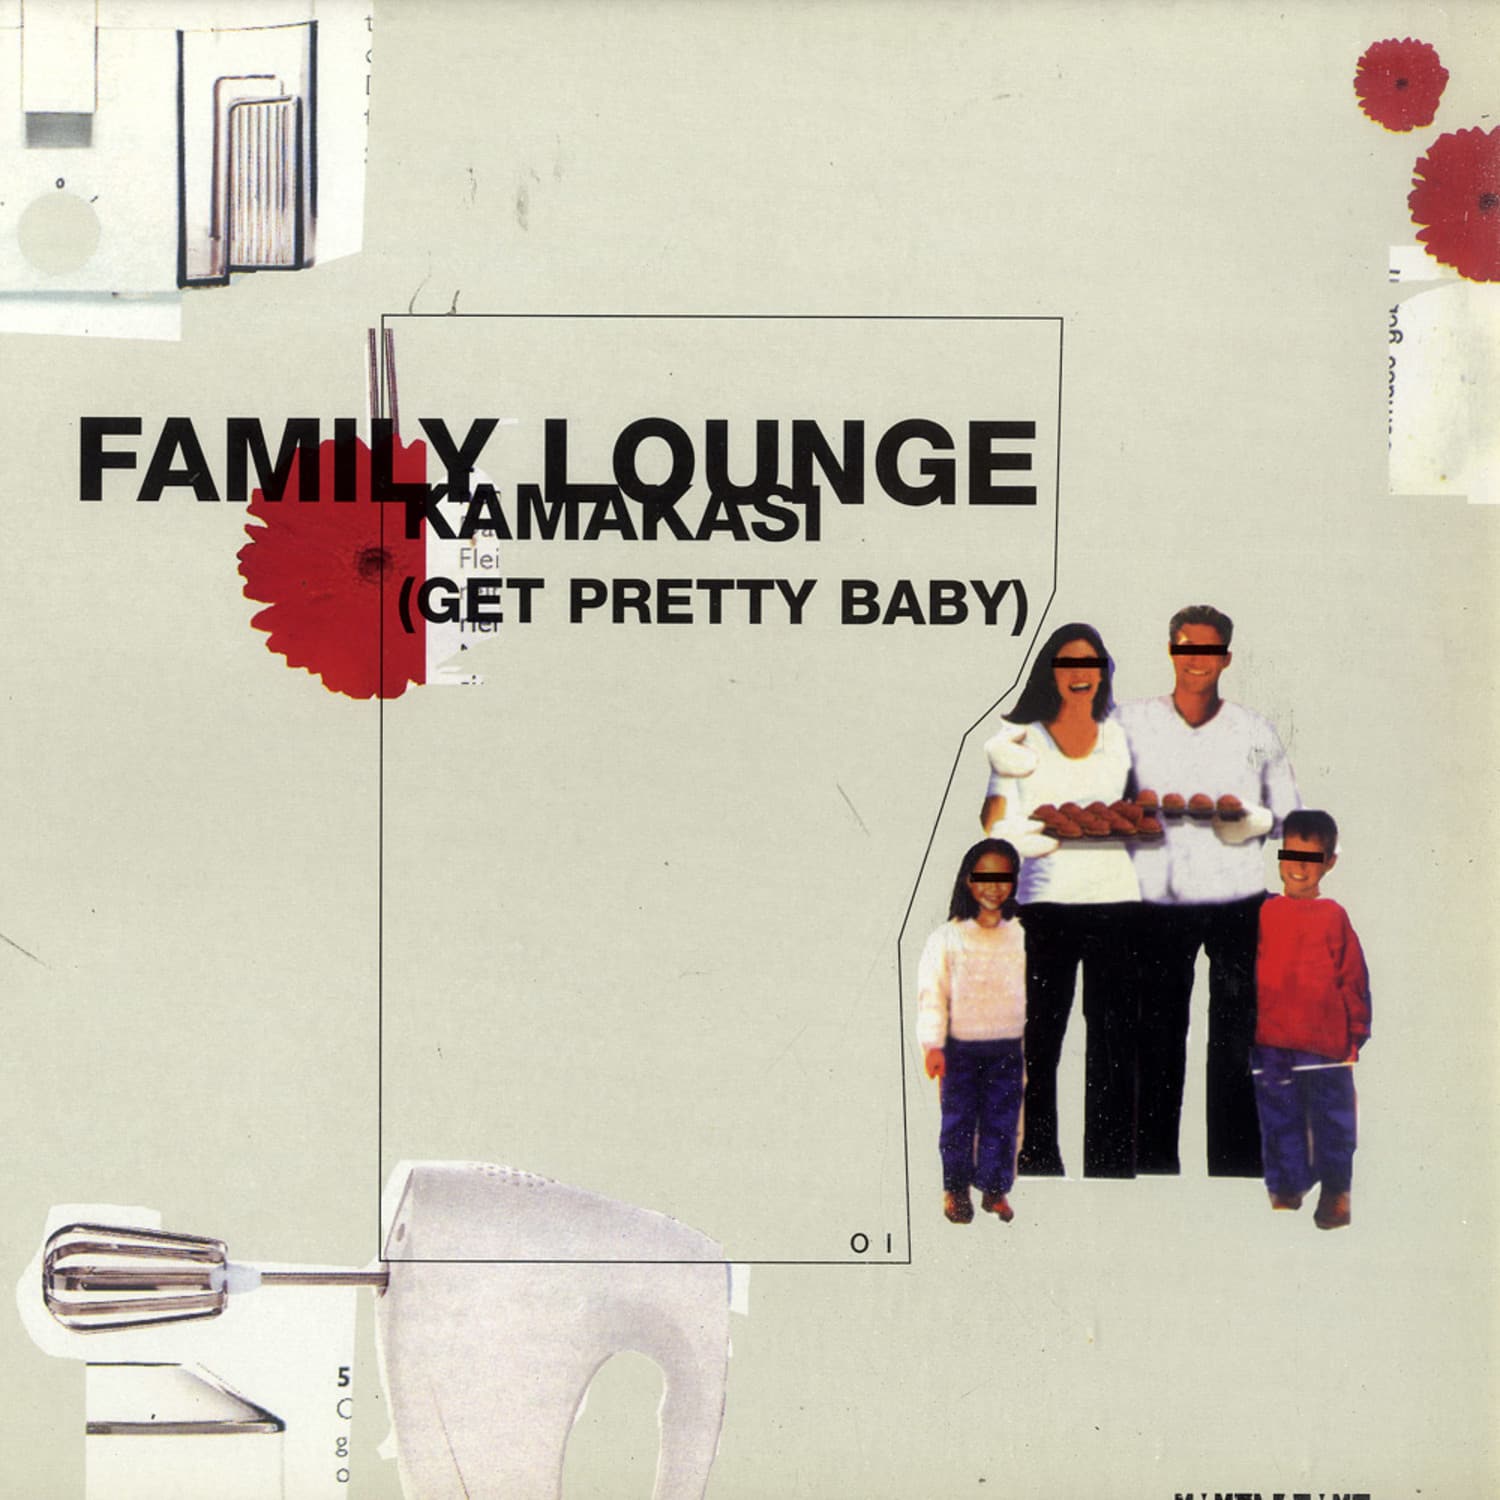 Family Lounge aka Athony Rother - KAMAKASI 